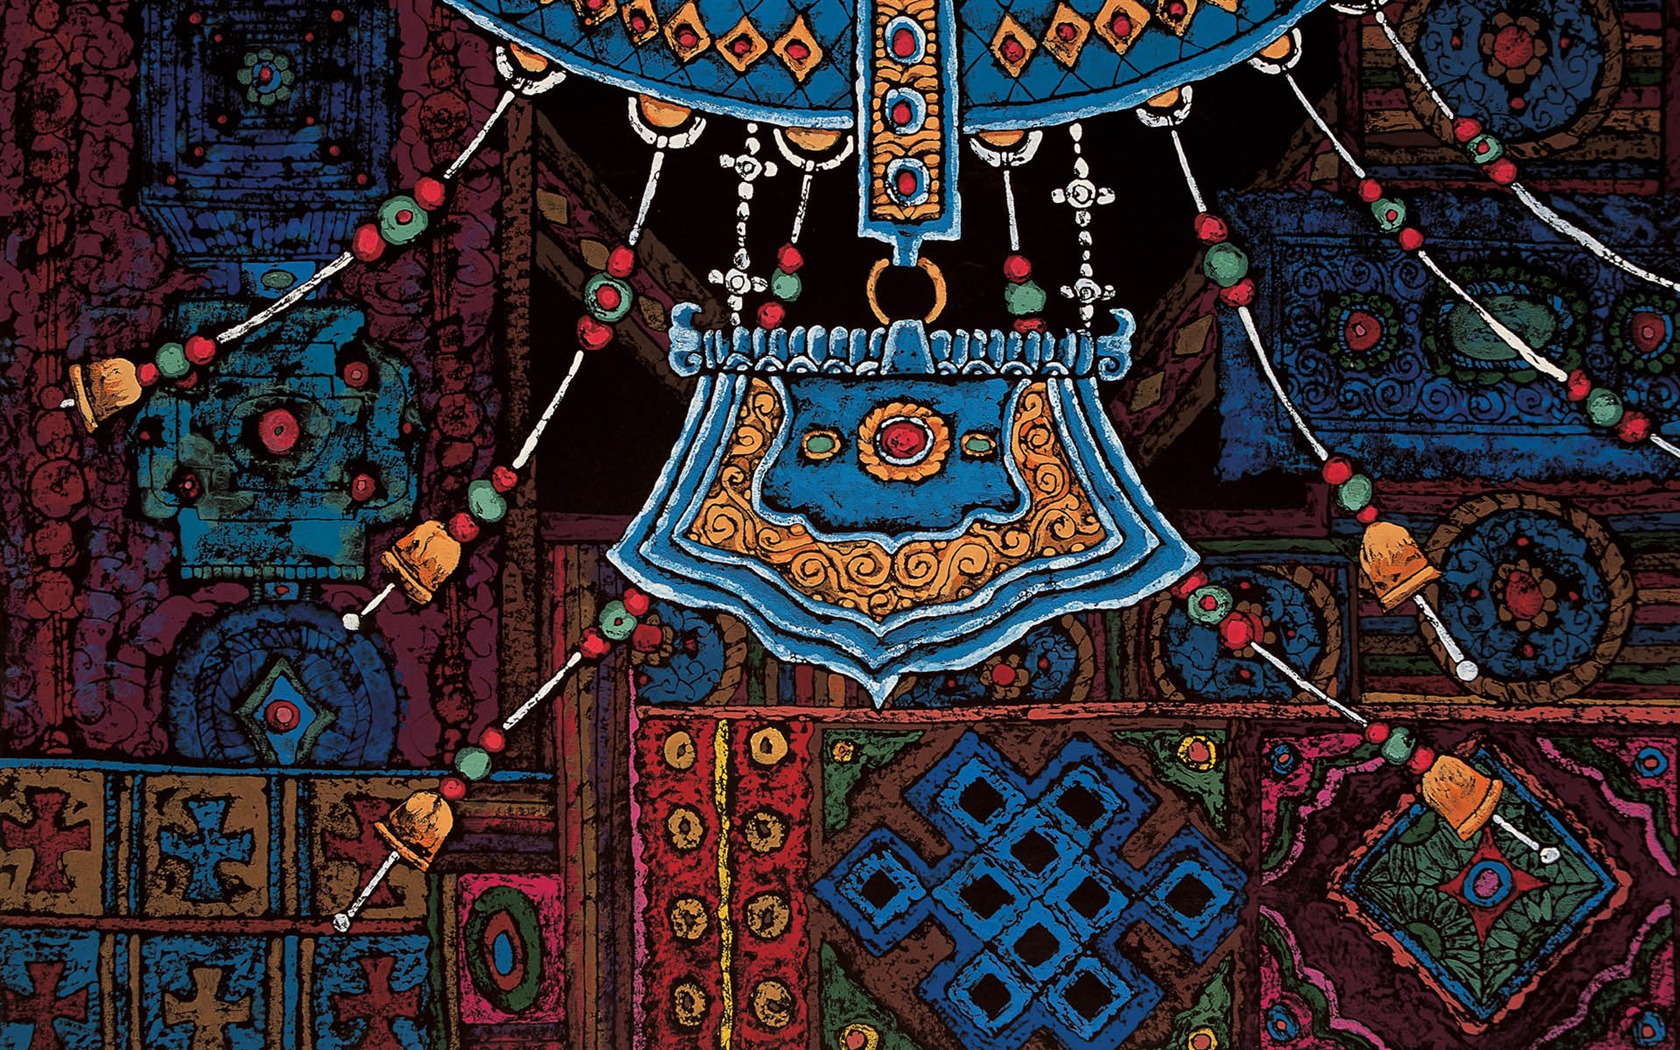 Cheung Pakistan print tibetischen Wallpaper (1) #3 - 1680x1050